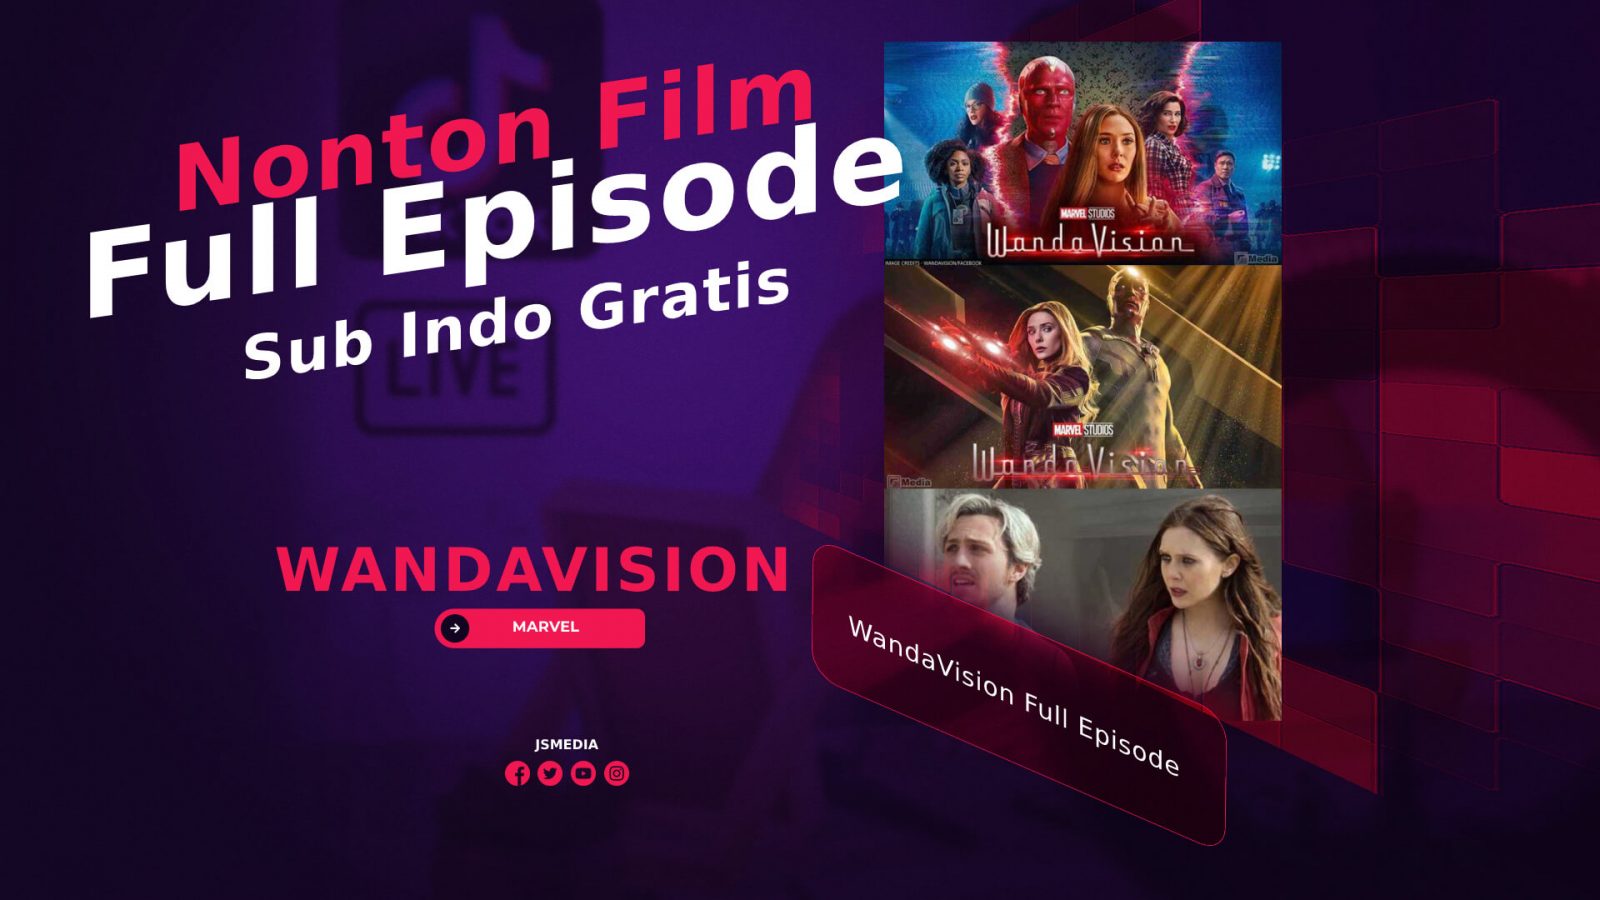 Nonton Film WandaVision Full Episode Sub Indo Gratis